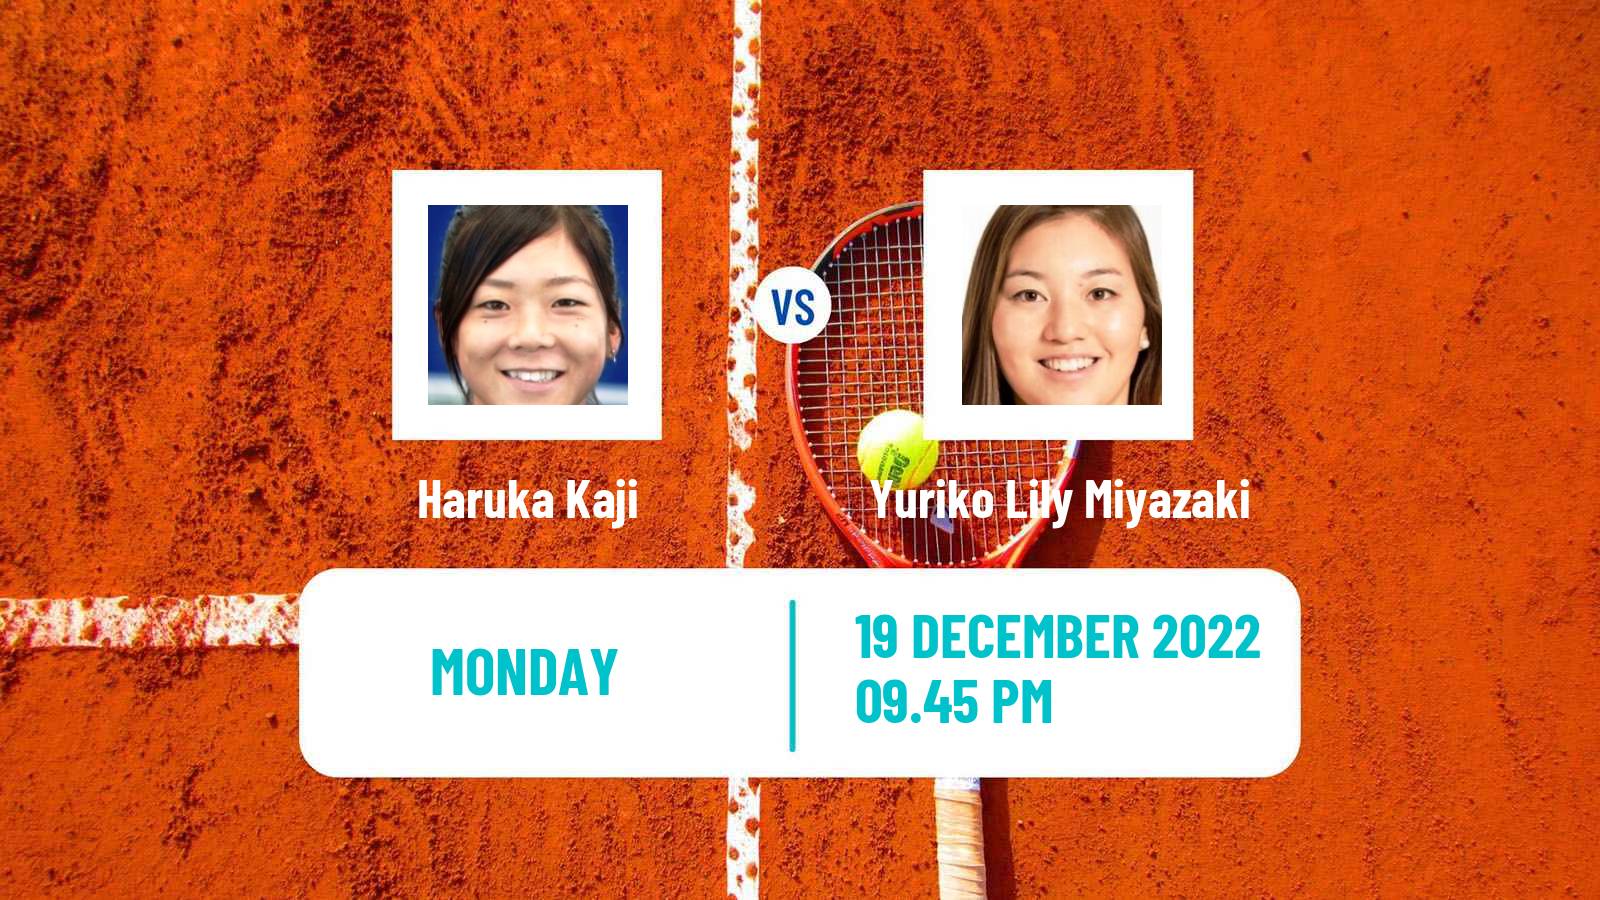 Tennis ITF Tournaments Haruka Kaji - Yuriko Lily Miyazaki